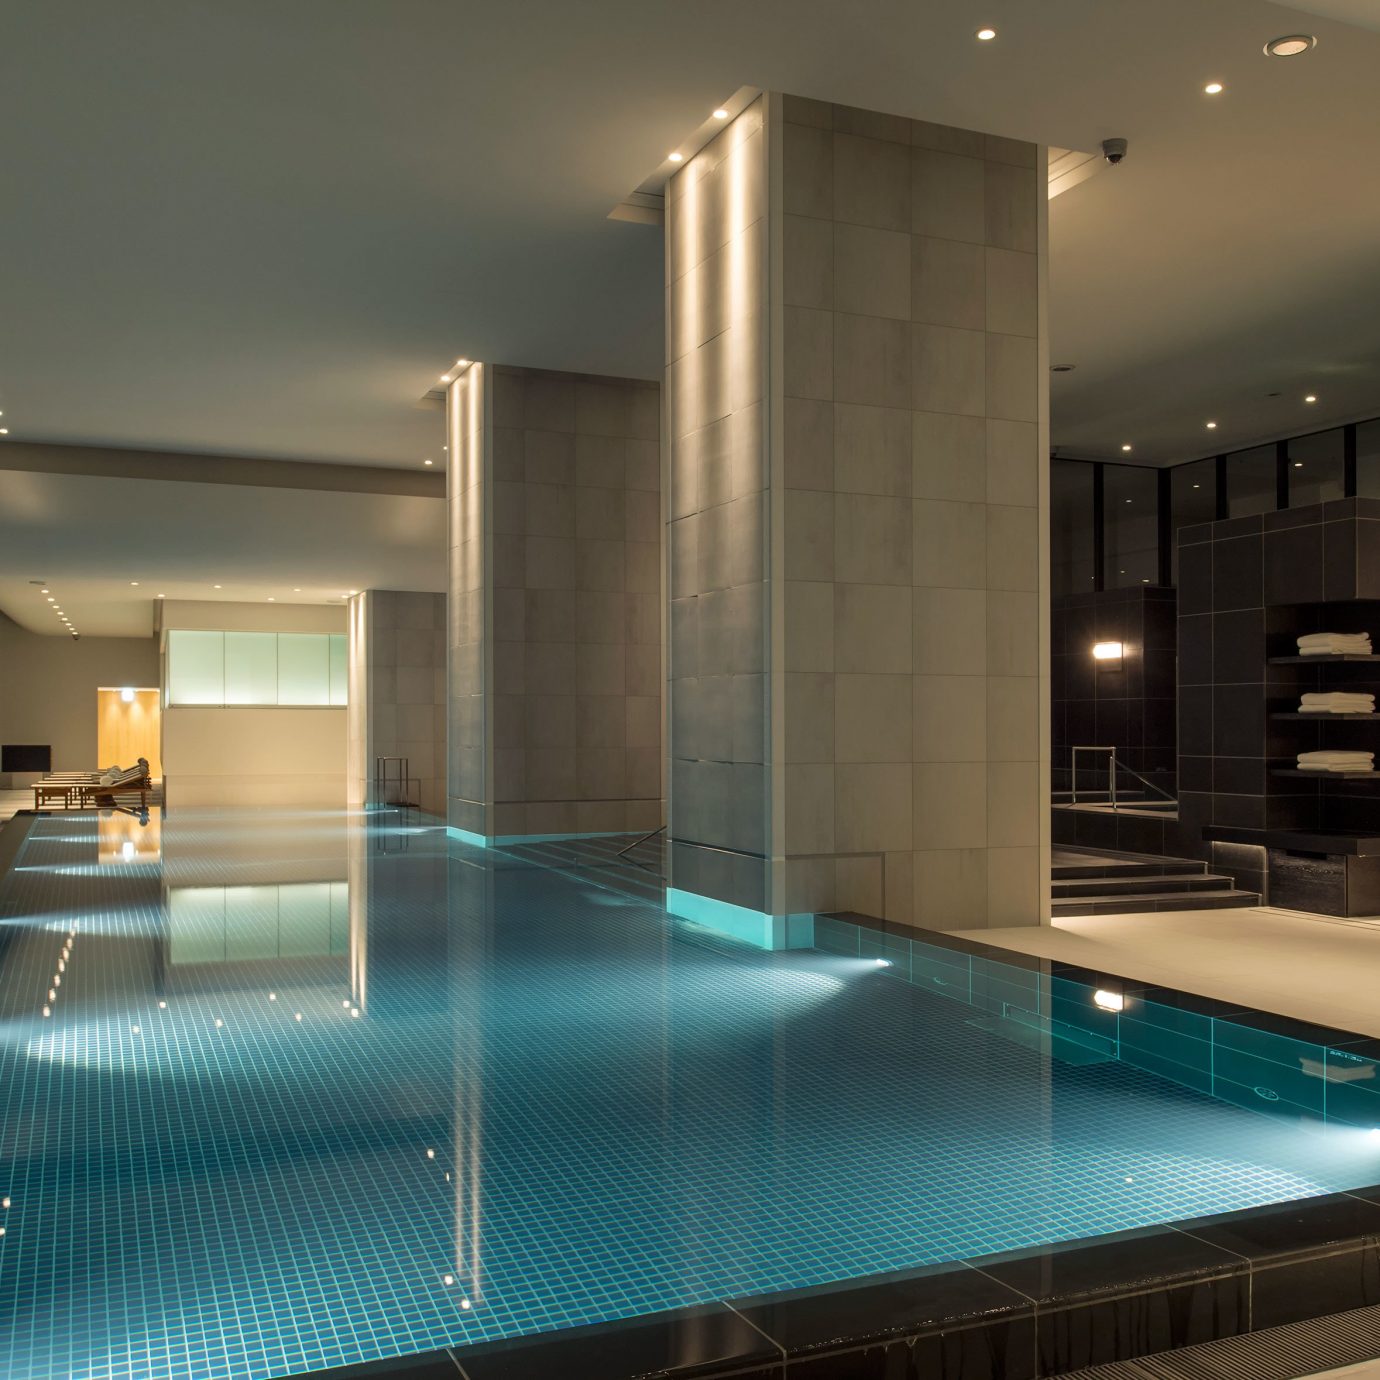 Hotels Japan Tokyo swimming pool lighting daylighting condominium Lobby